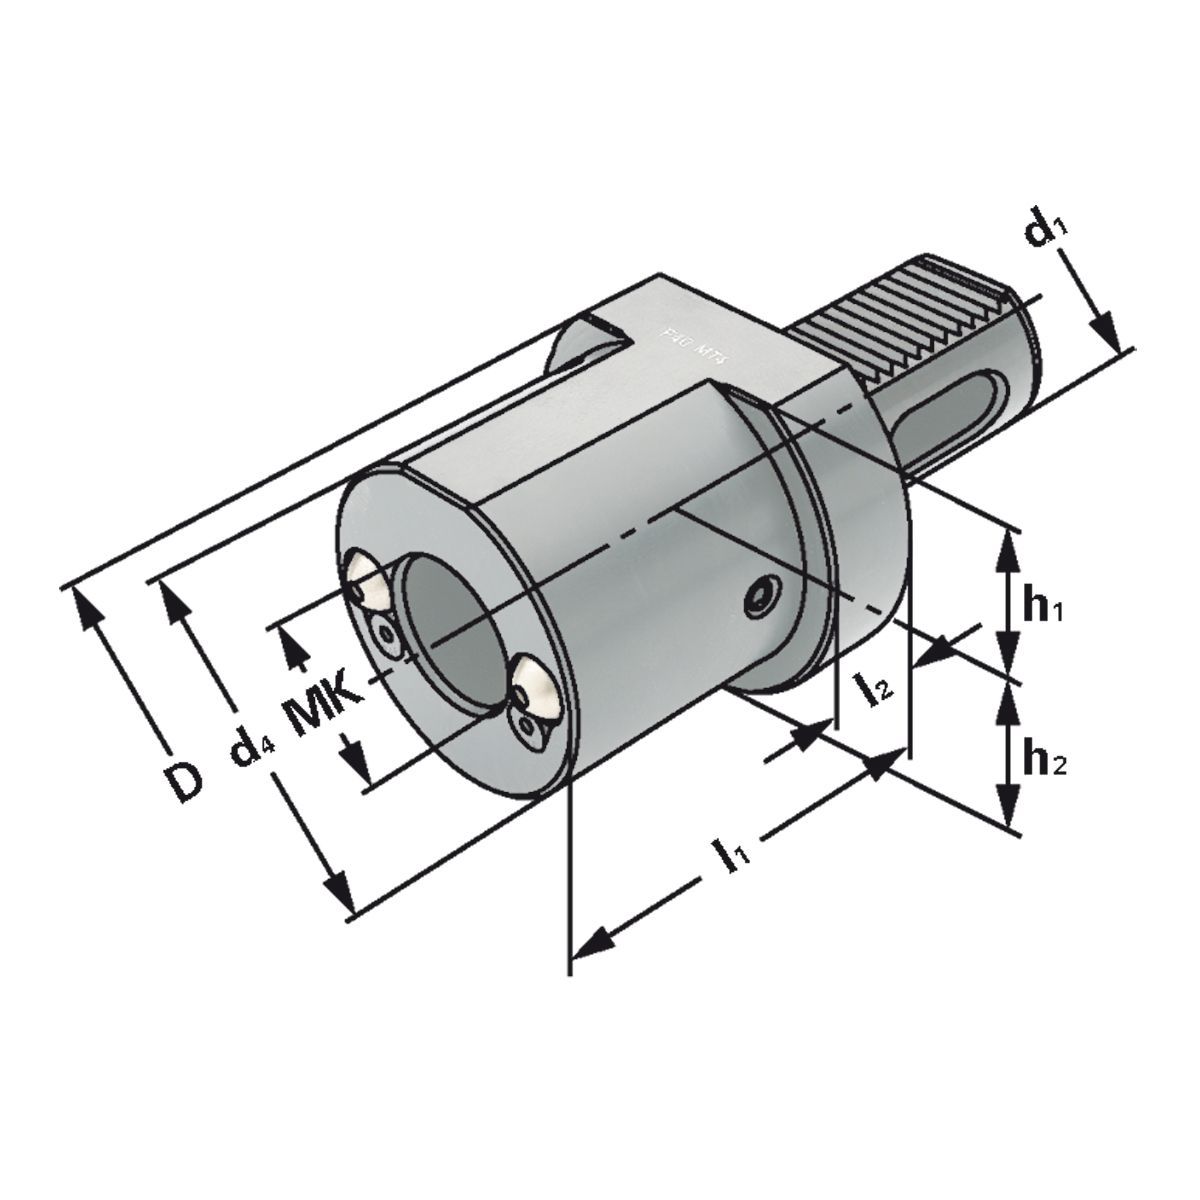 MK-Bohrerhalter F1-25xMK2 DIN 69880 (ISO 10889)